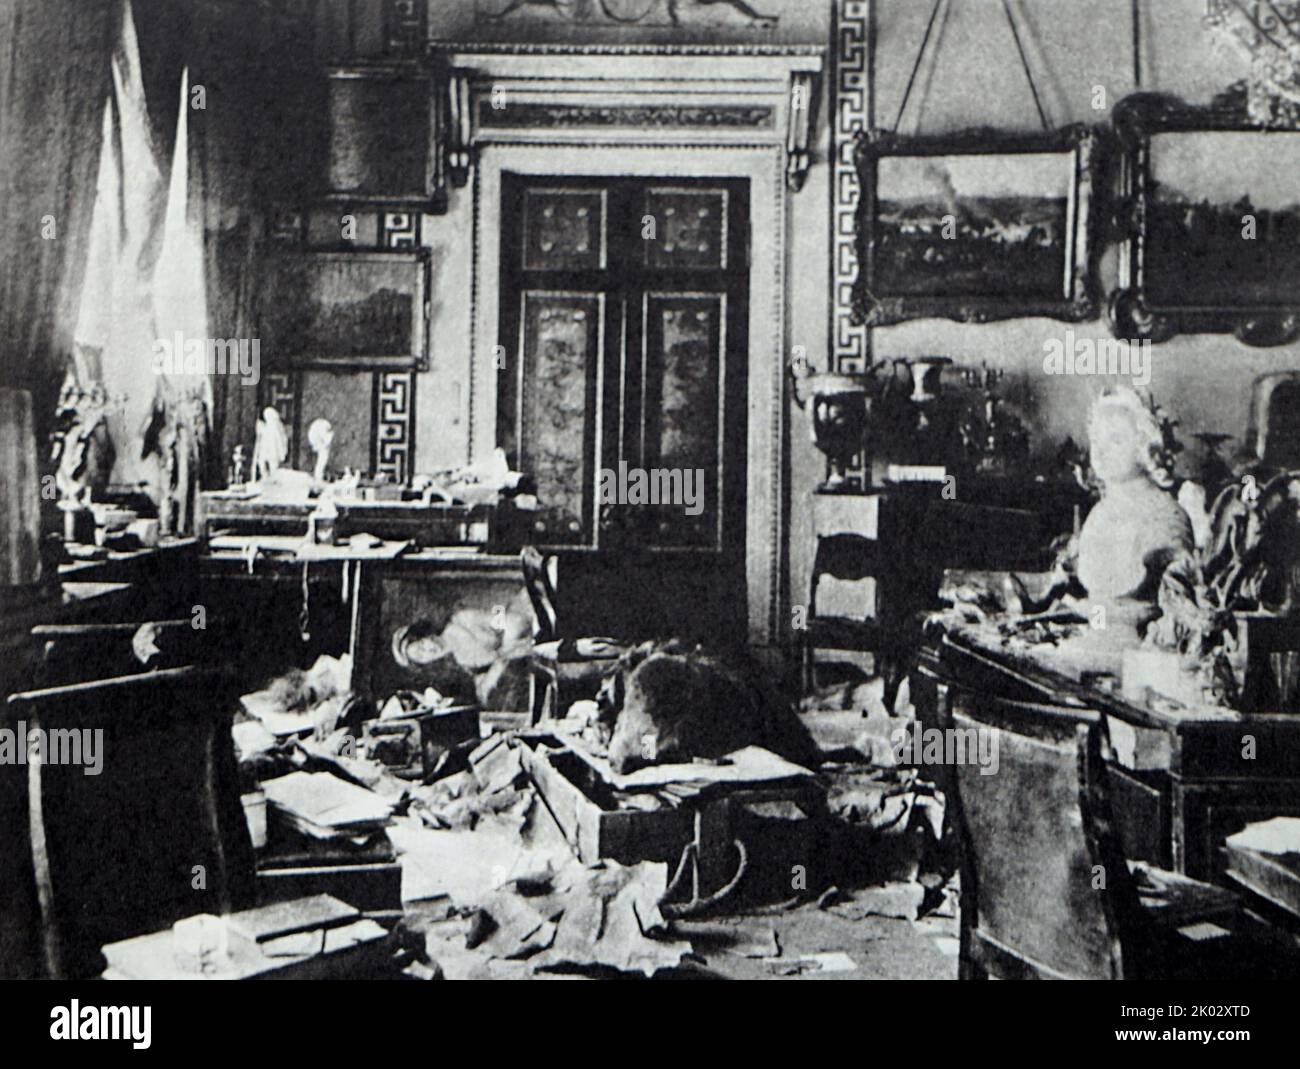 Studienraum von Alexander II. Nach dem Angriff auf den Winterpalast am 26. Oktober 1917. Foto von K. Kubesch. Stockfoto